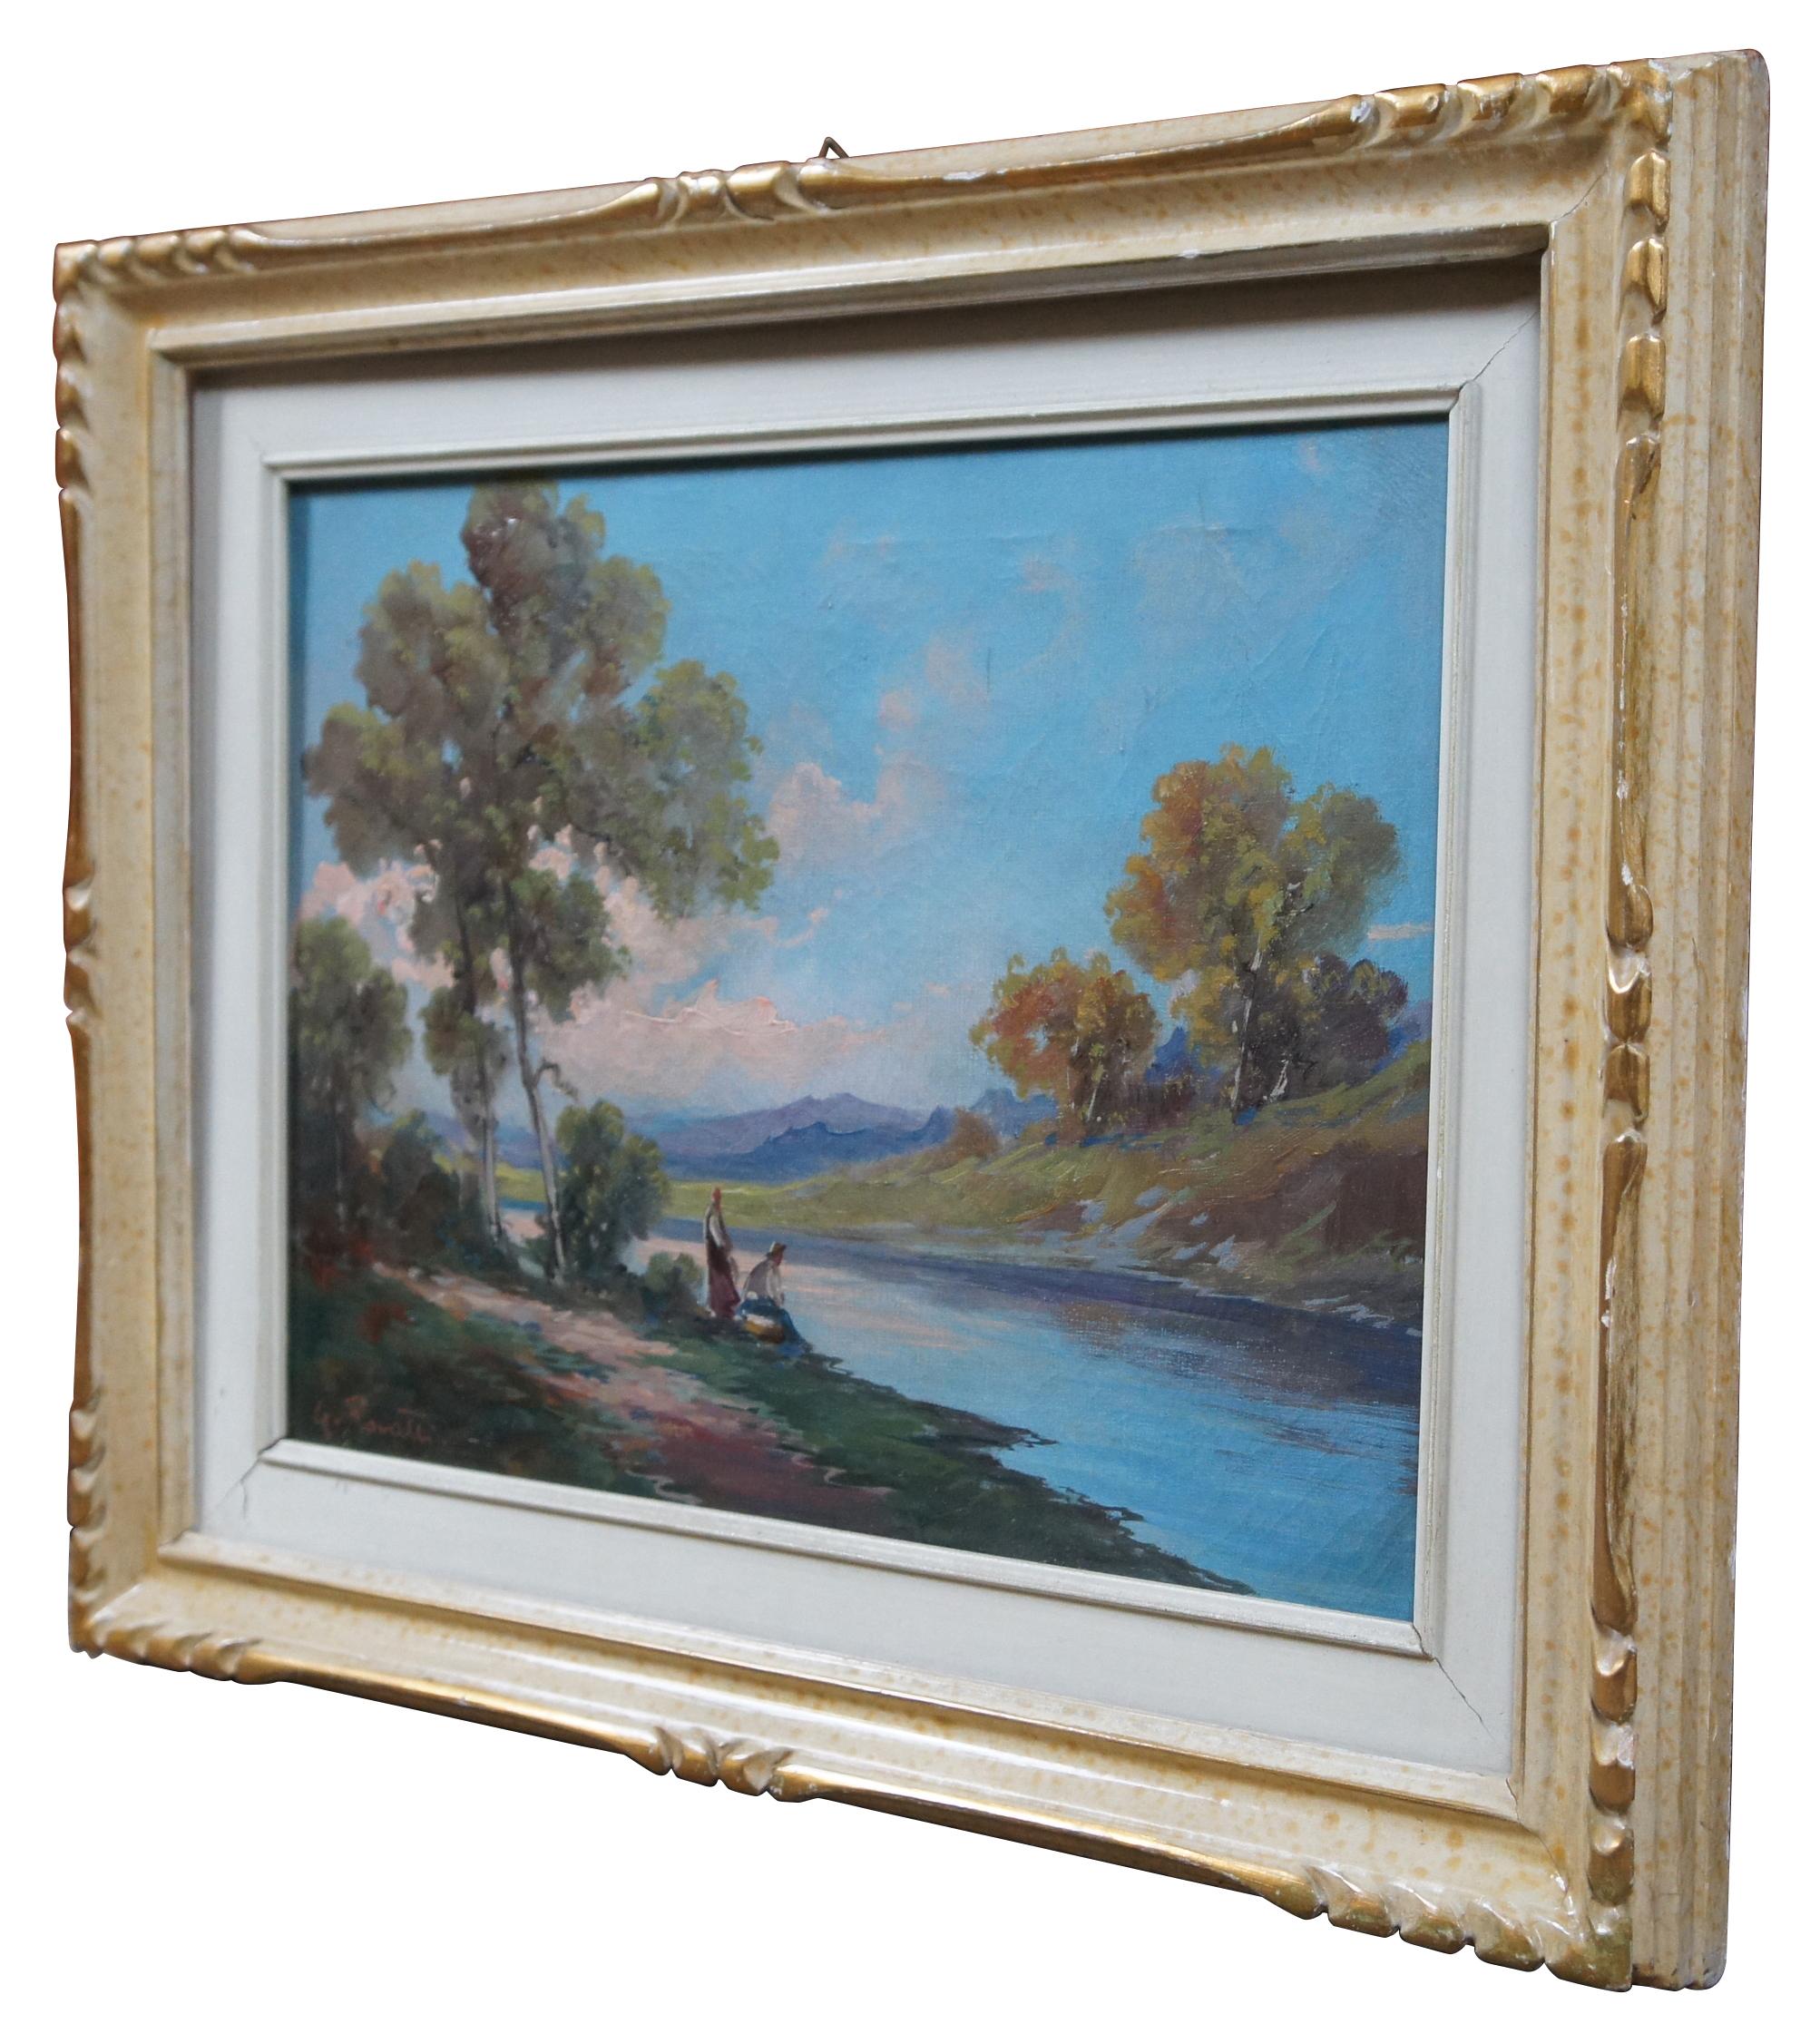 Peinture de paysage à l'huile sur toile du milieu du siècle représentant une rivière bordée d'arbres avec deux personnages en train de laver du linge. Signé en bas à gauche G. Rovatti.

Mesures : 21